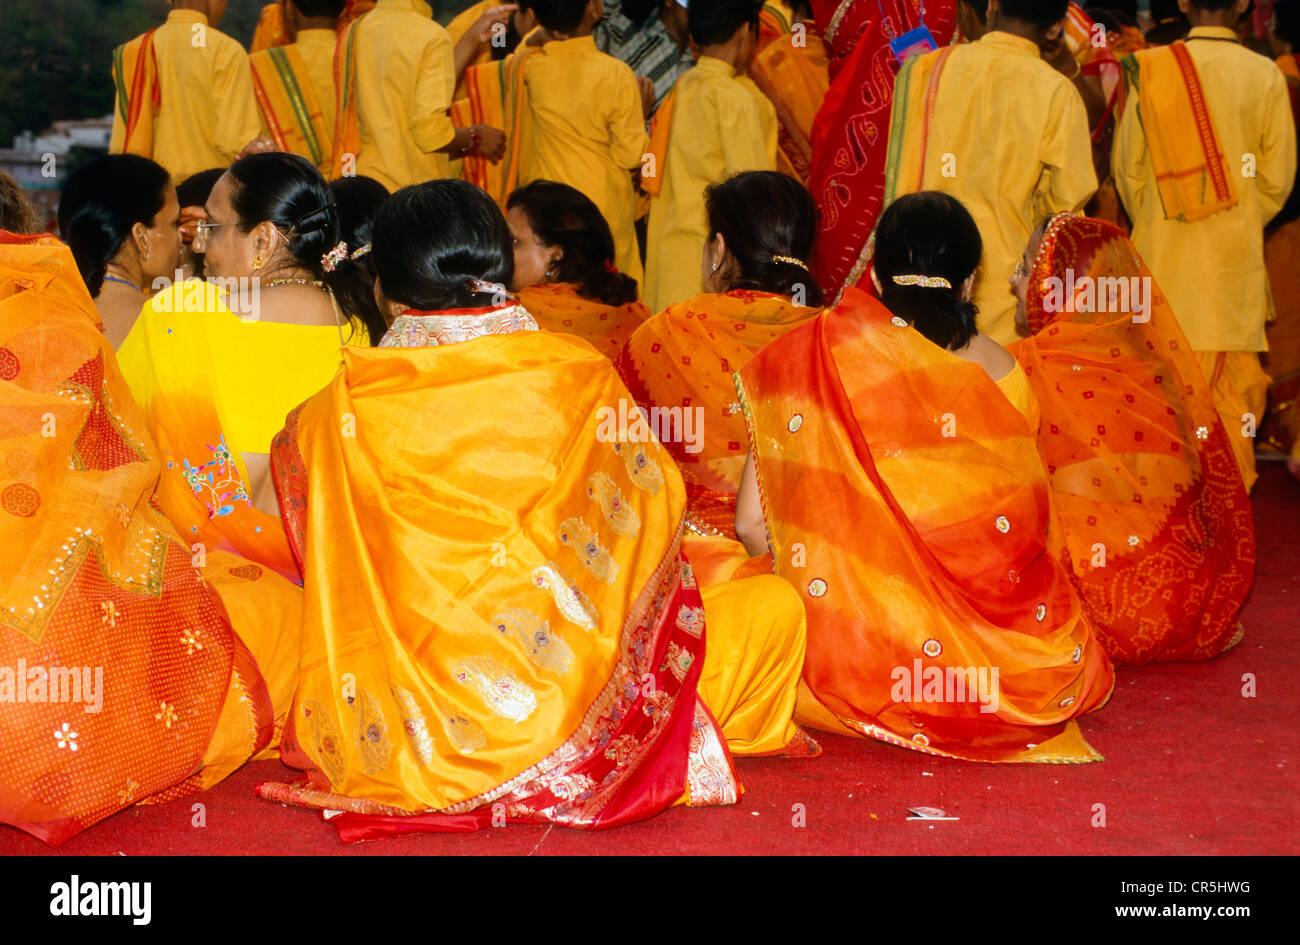 Un groupe de femmes de se joindre à la cérémonie à Aartii Ram Jhula à Rishikesh, Uttarakhand, anciennement l'Uttaranchal, Inde, Asie Banque D'Images